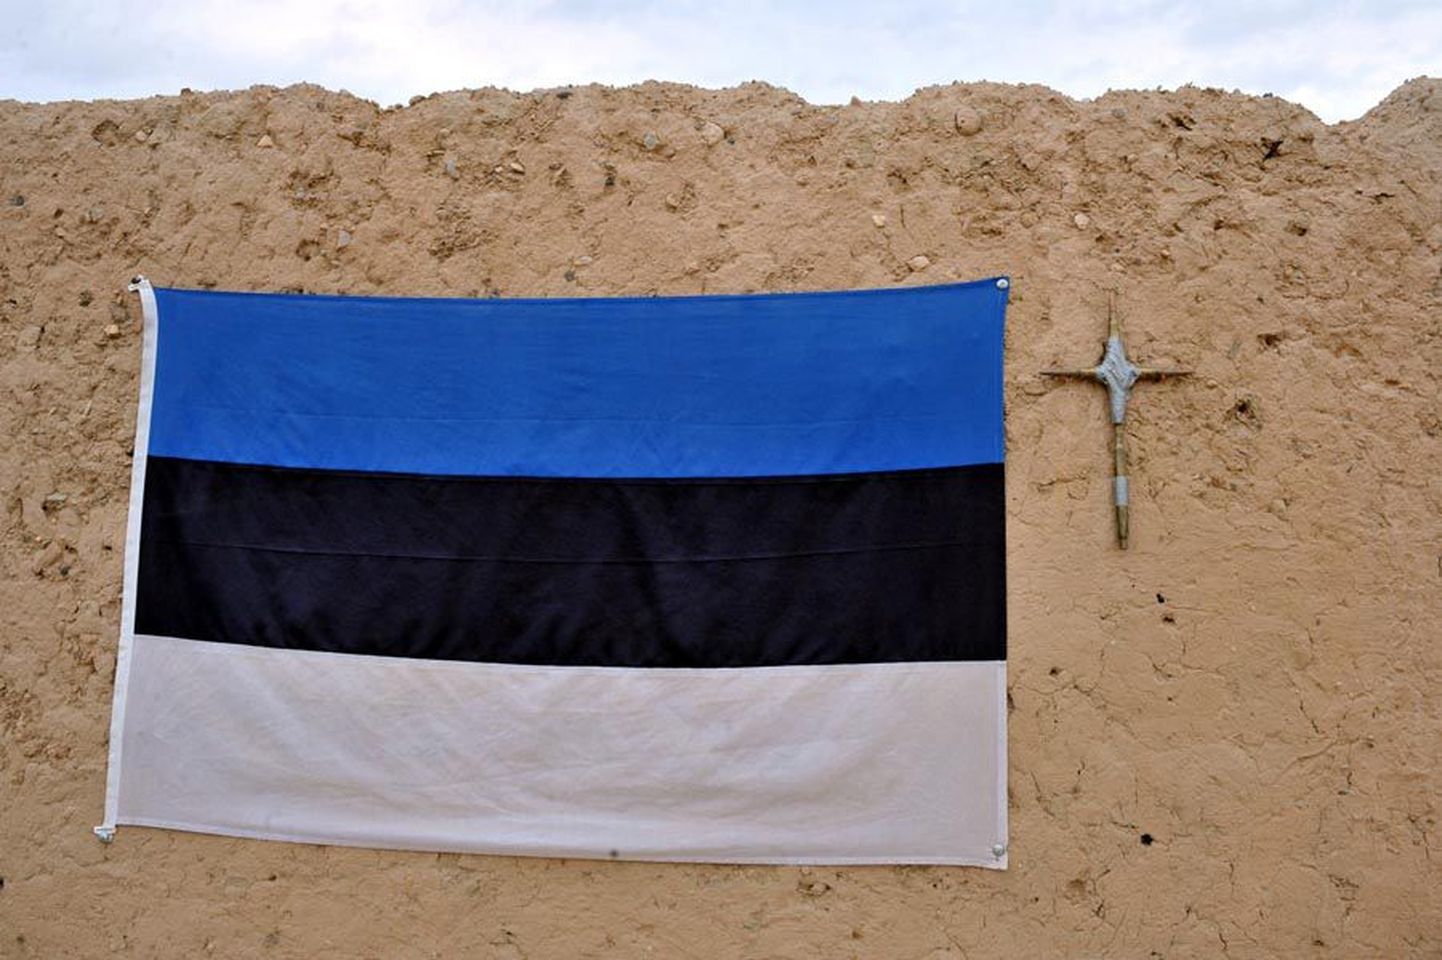 Helmandi provintsi pealinnas pakiti lipp kokku. Eesti kaitseväelased jätkavad teenistust Camp Bastioni sõjaväebaasis.